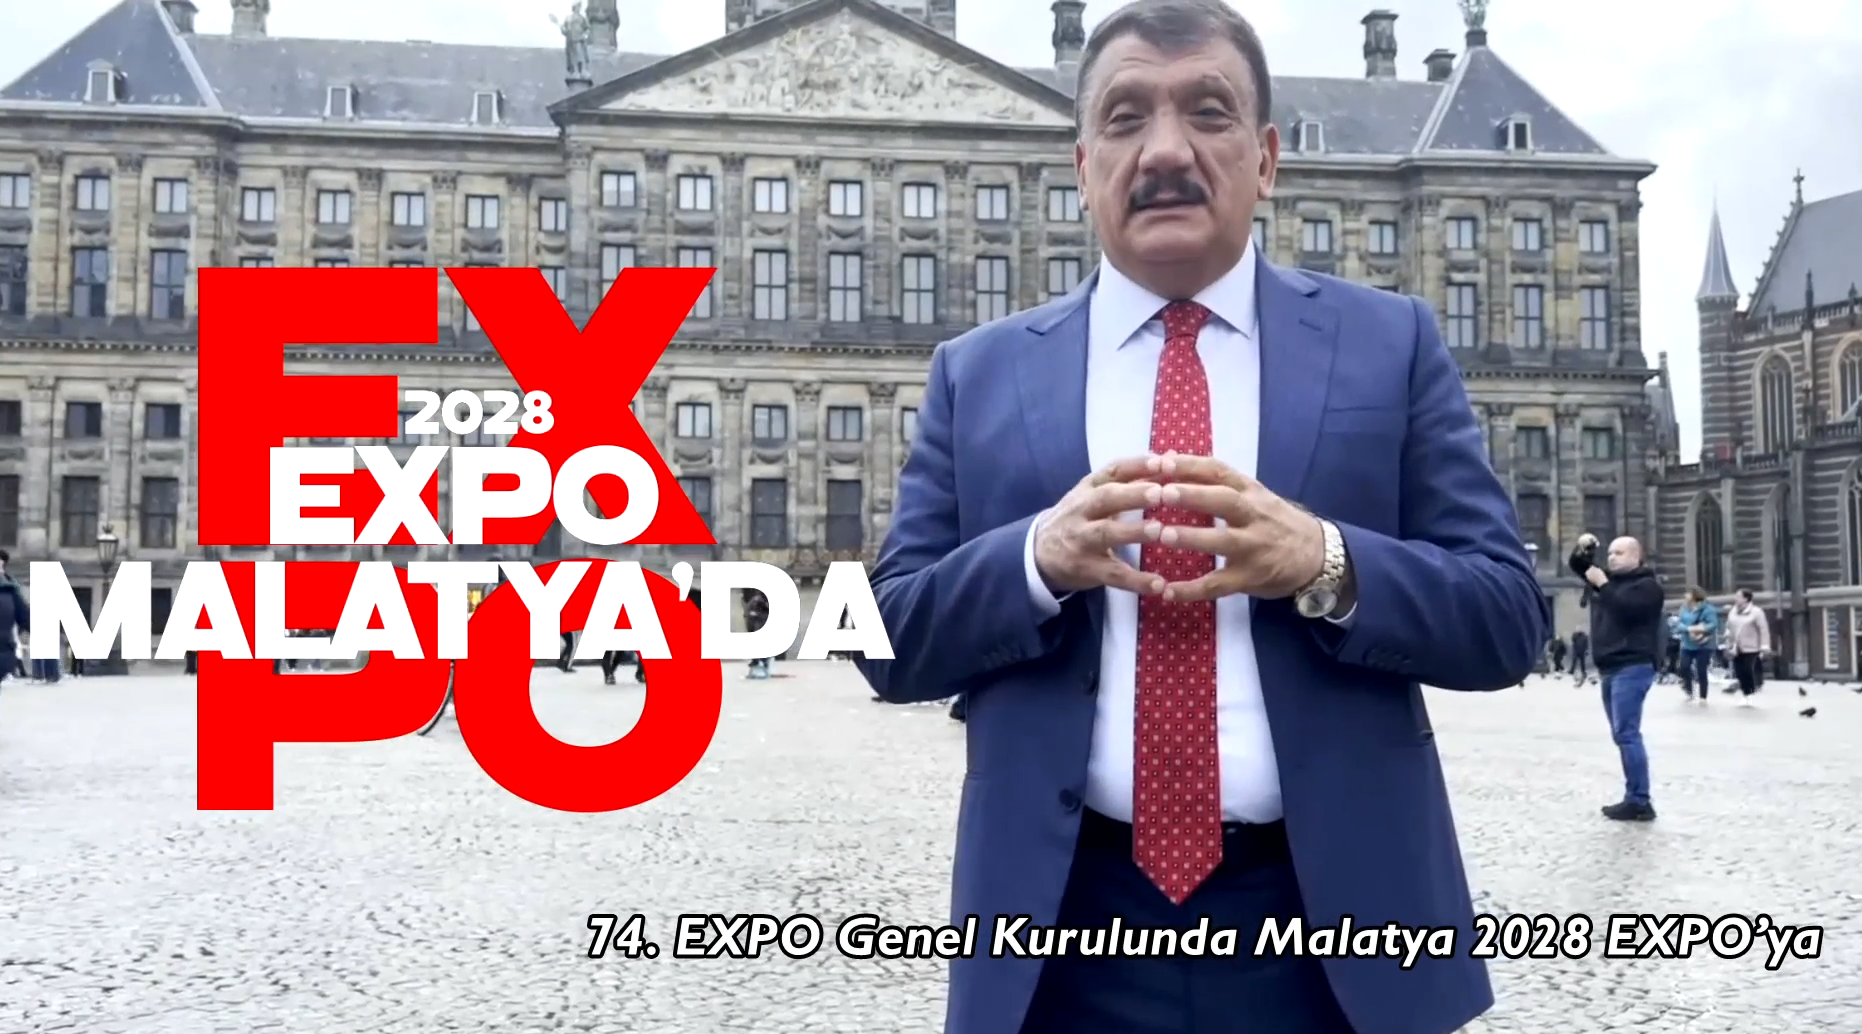 EXPO 2028 MALATYA’DA